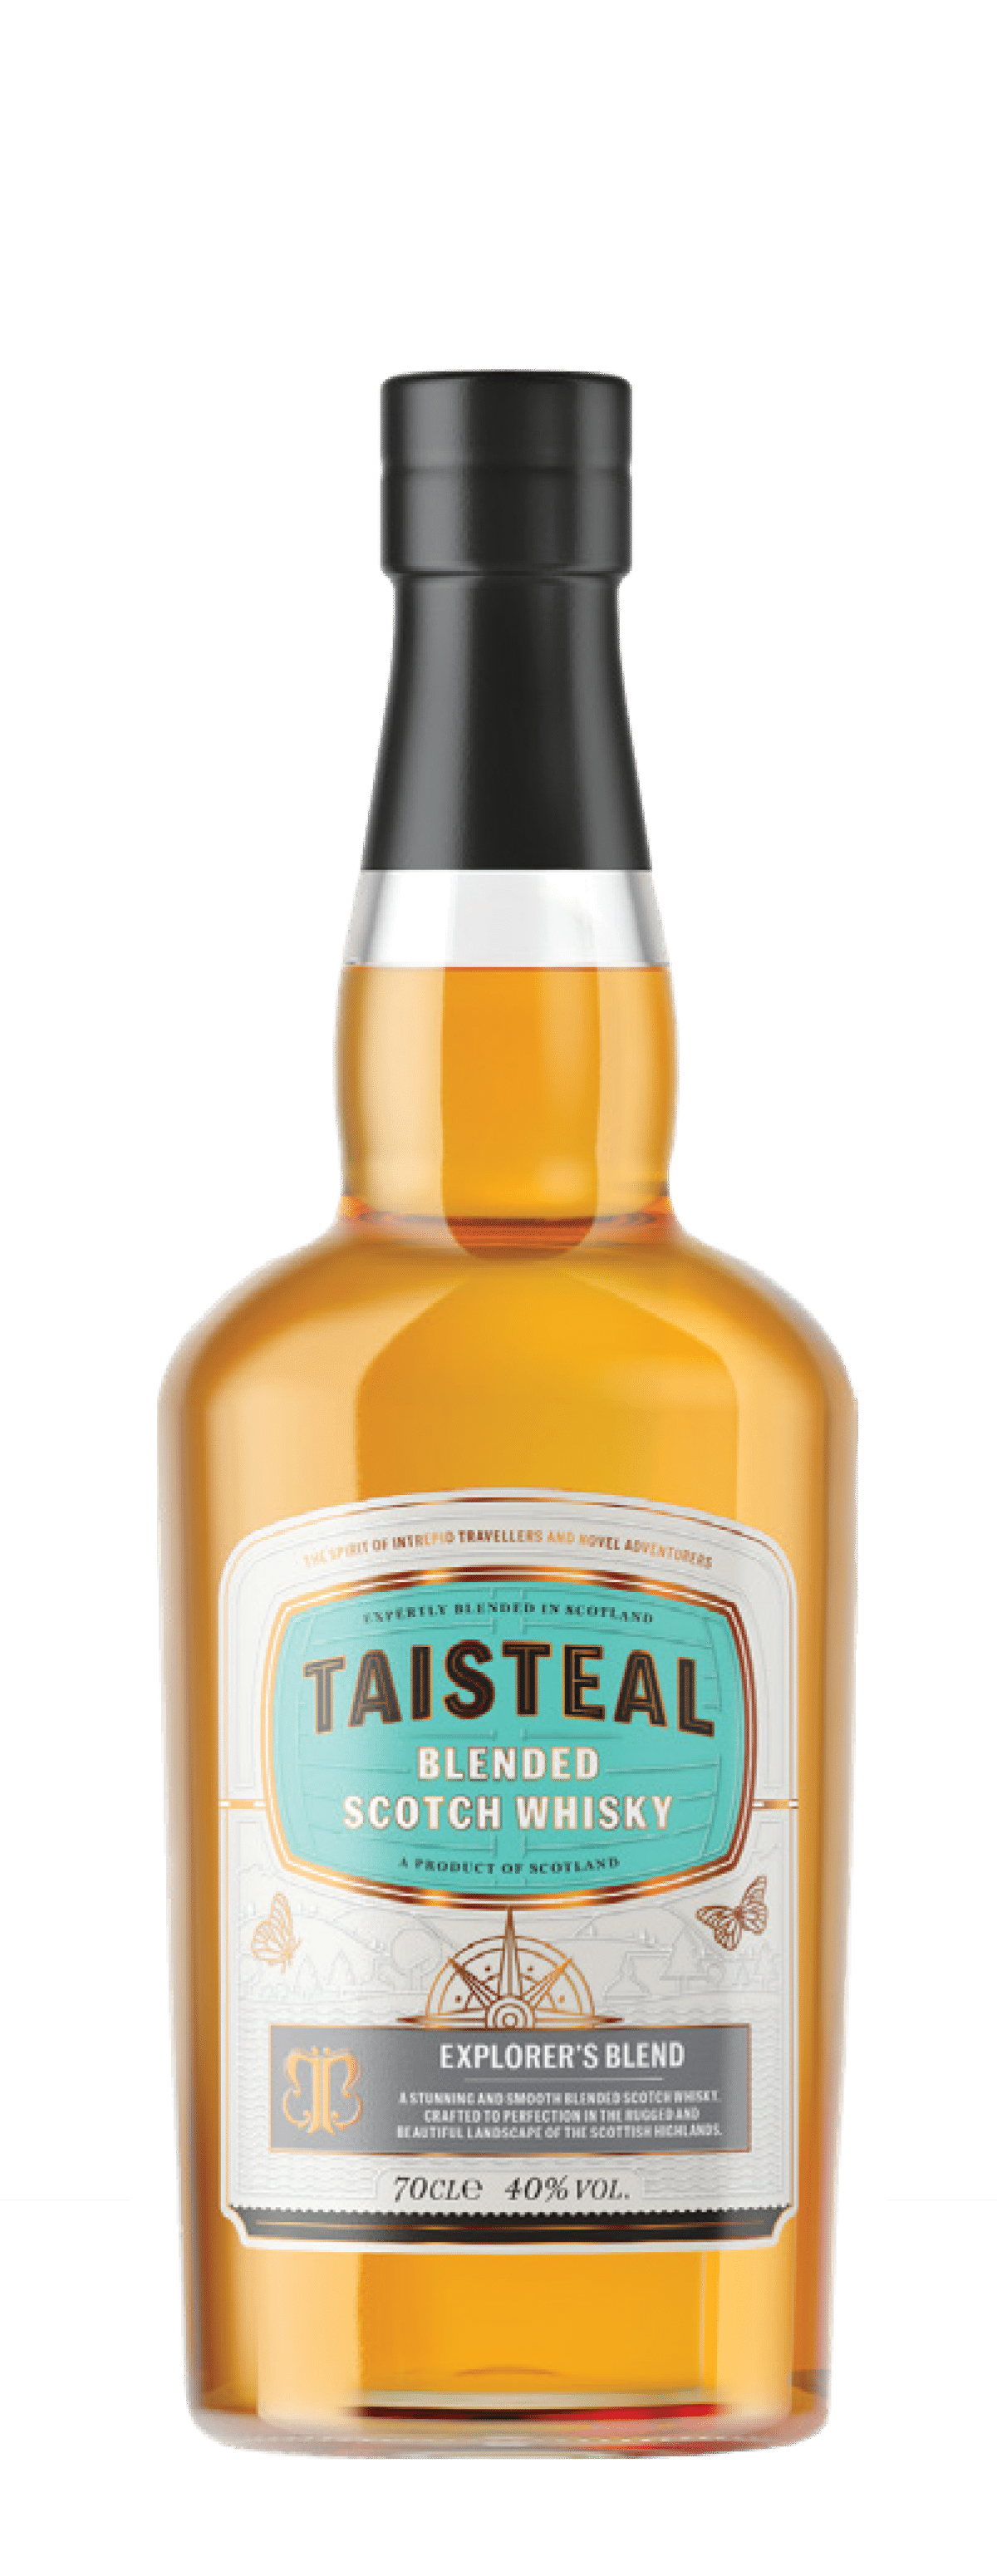 Taisteal blended scotch pas cher